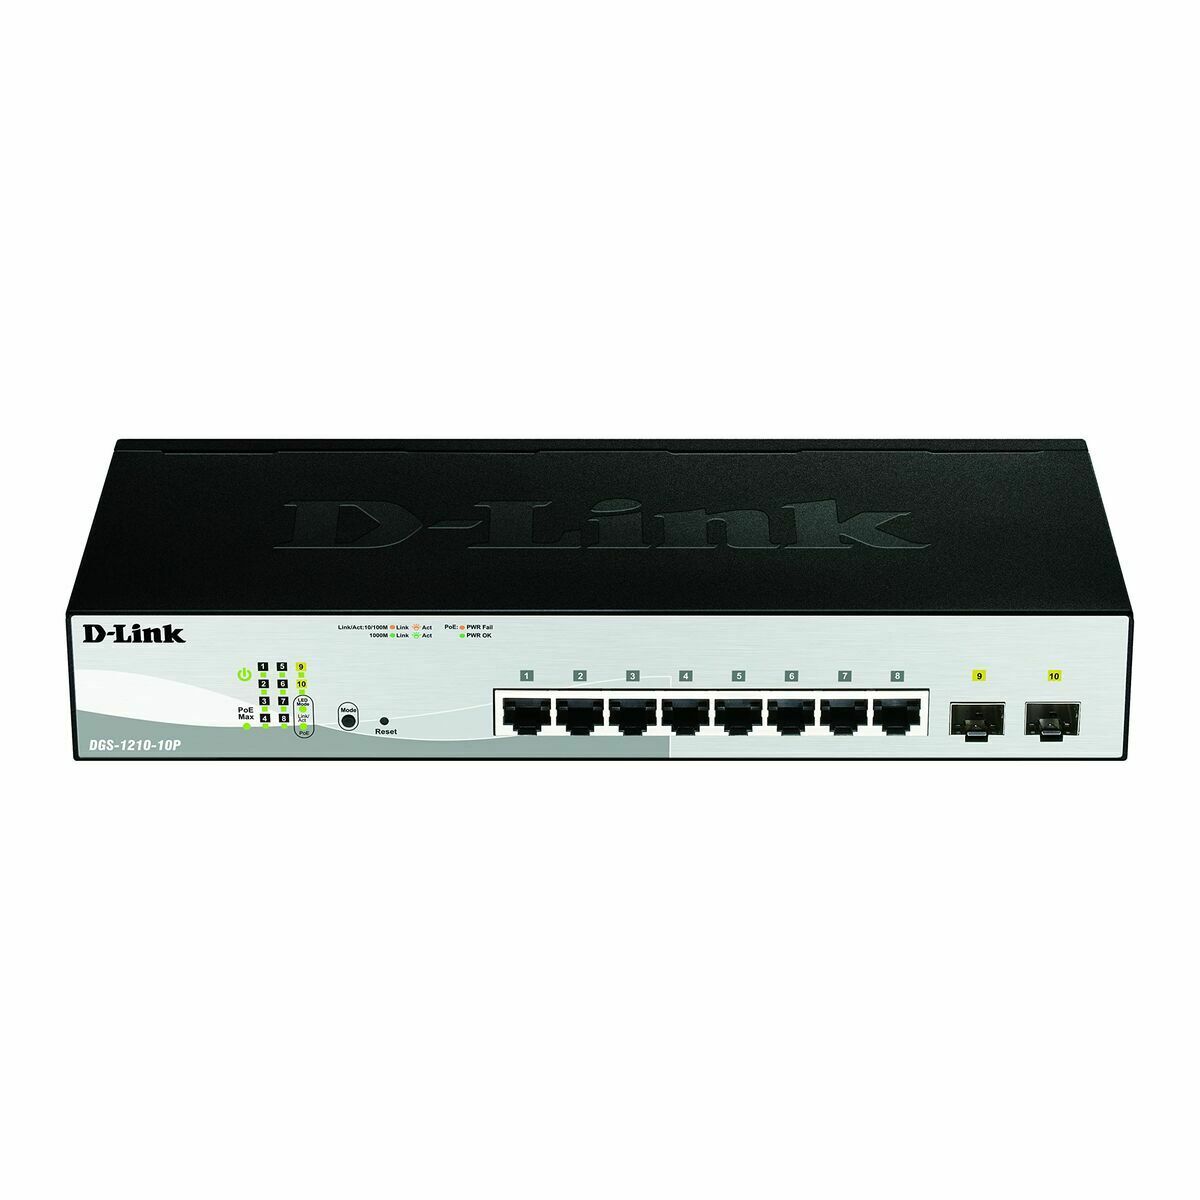 Switch D-Link DGS-1210-10P/E RJ45 x 8